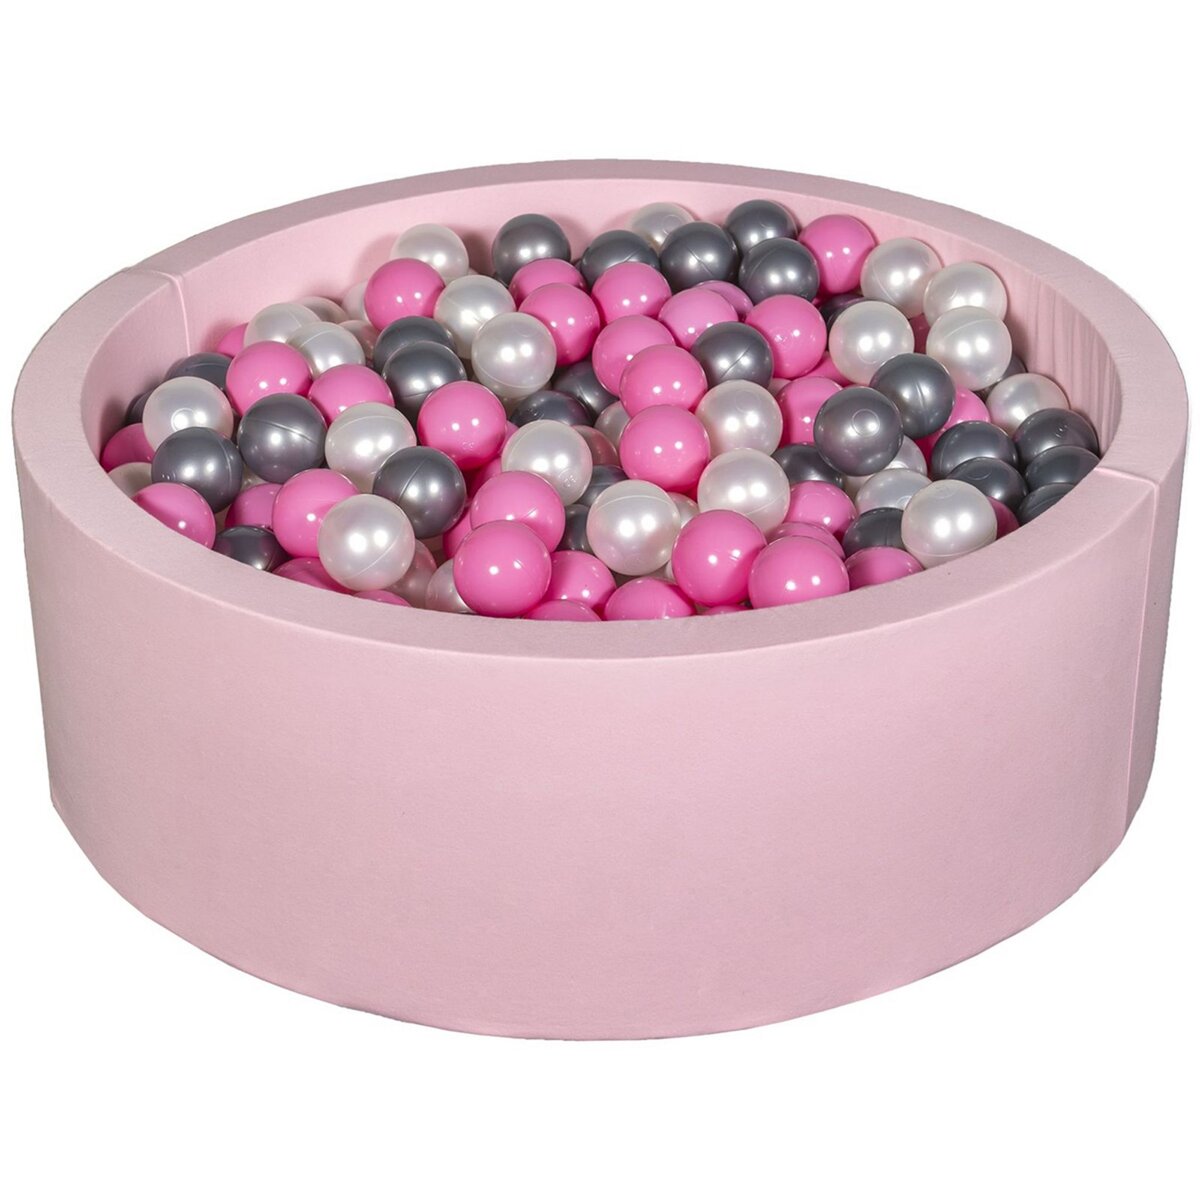  Piscine à balles Aire de jeu + 450 balles rose perle, rose clair, argent